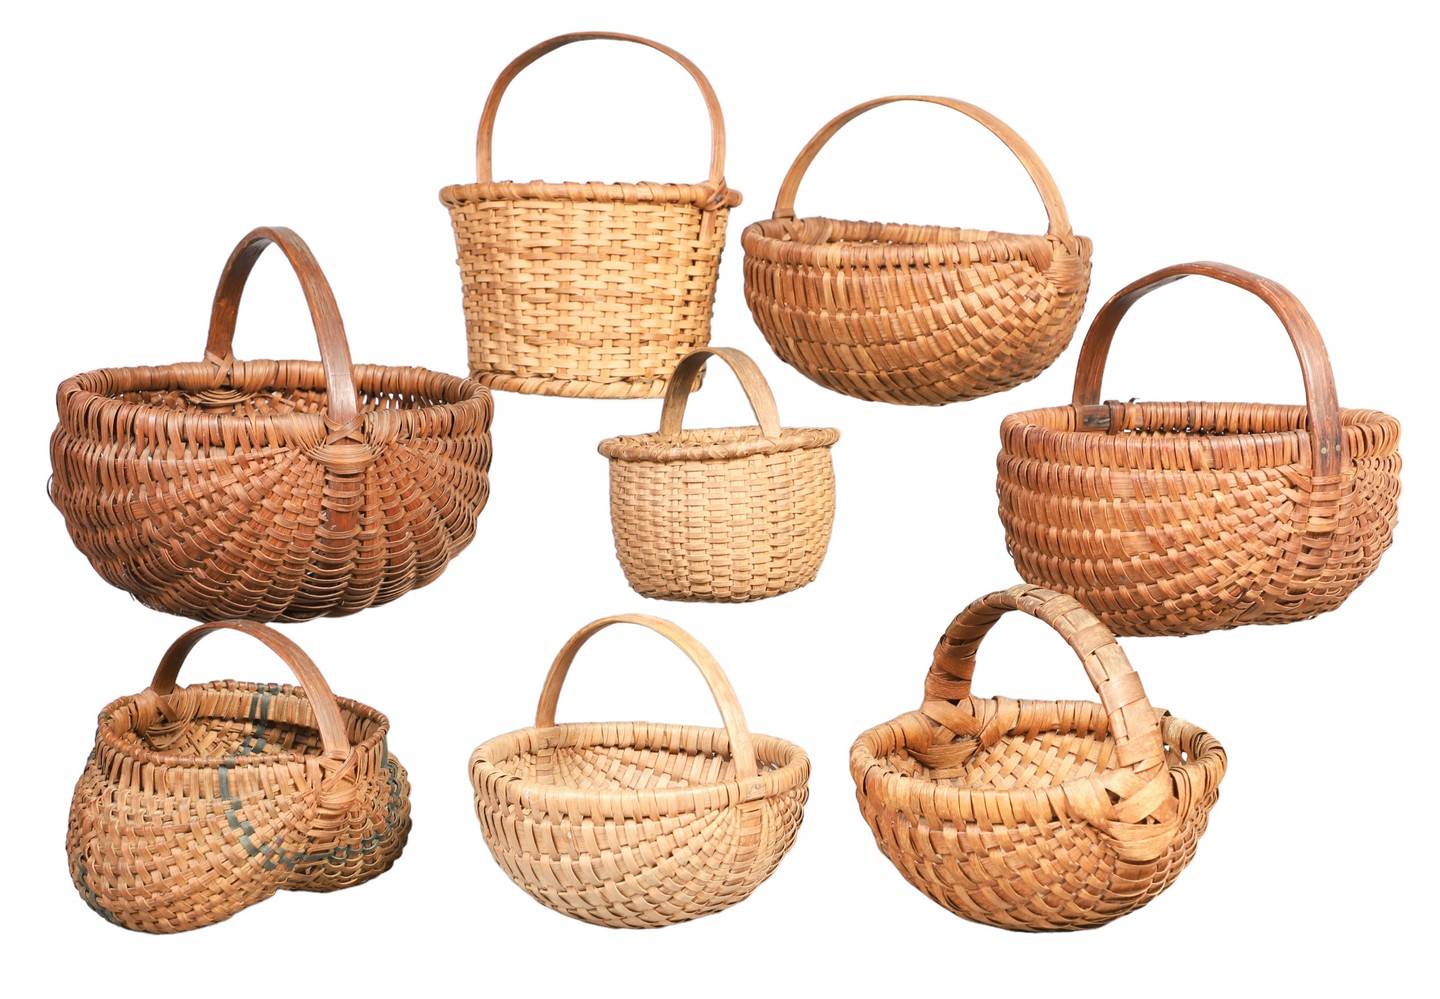  8 Small splint baskets to include 2e0934